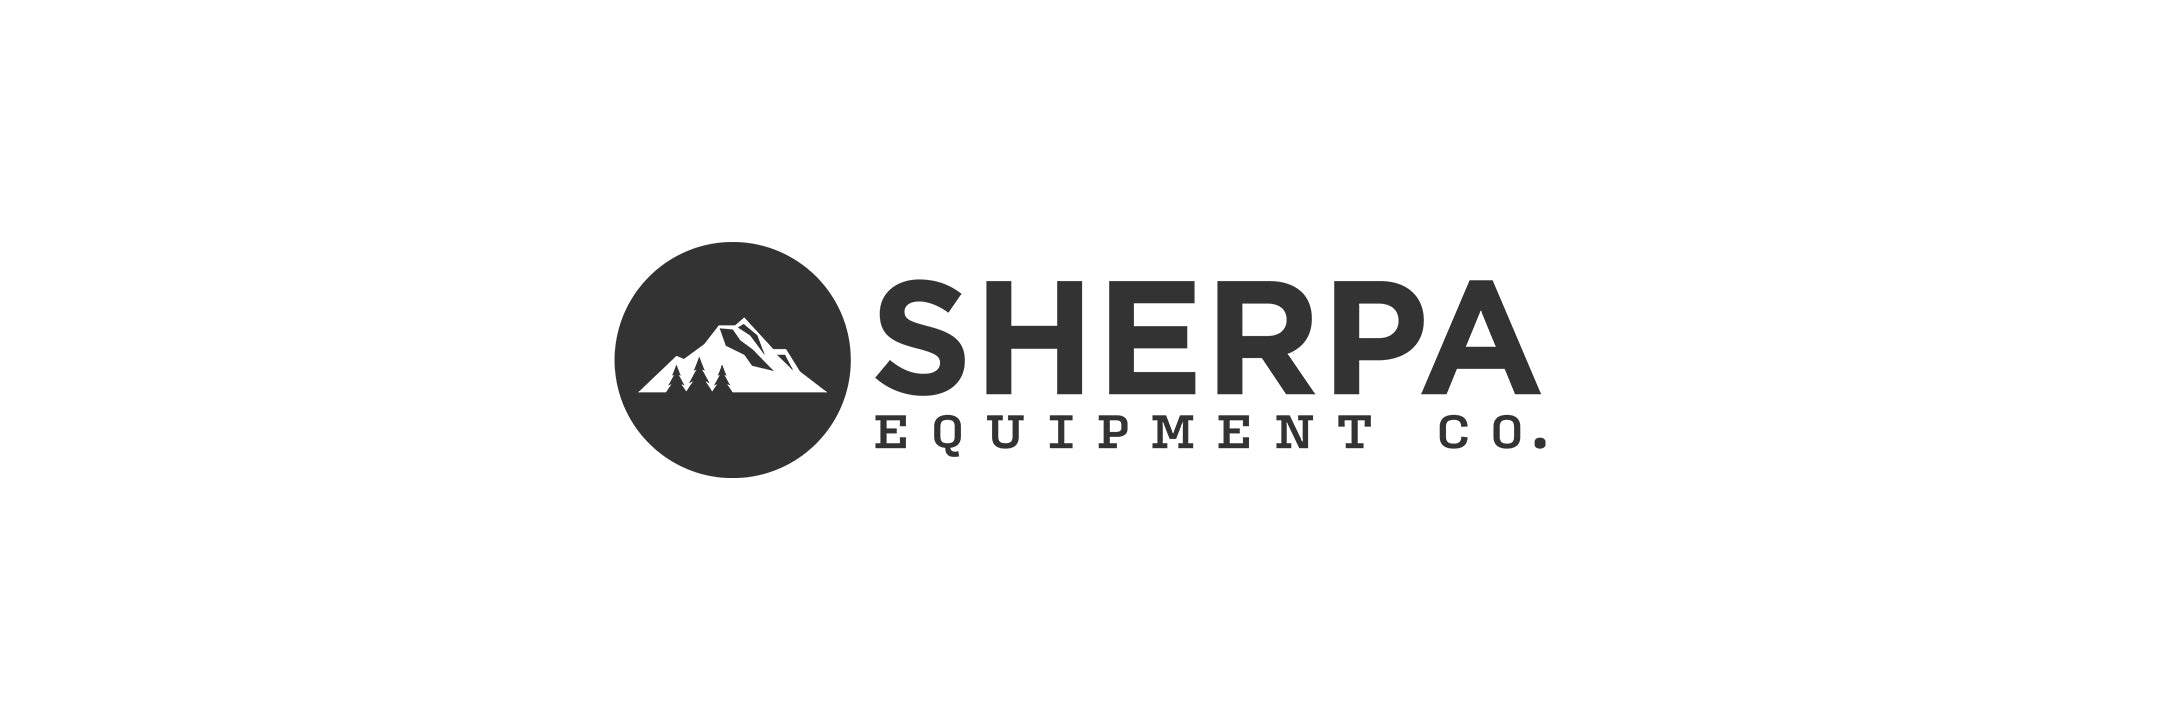 Sherpa Equipment Co.